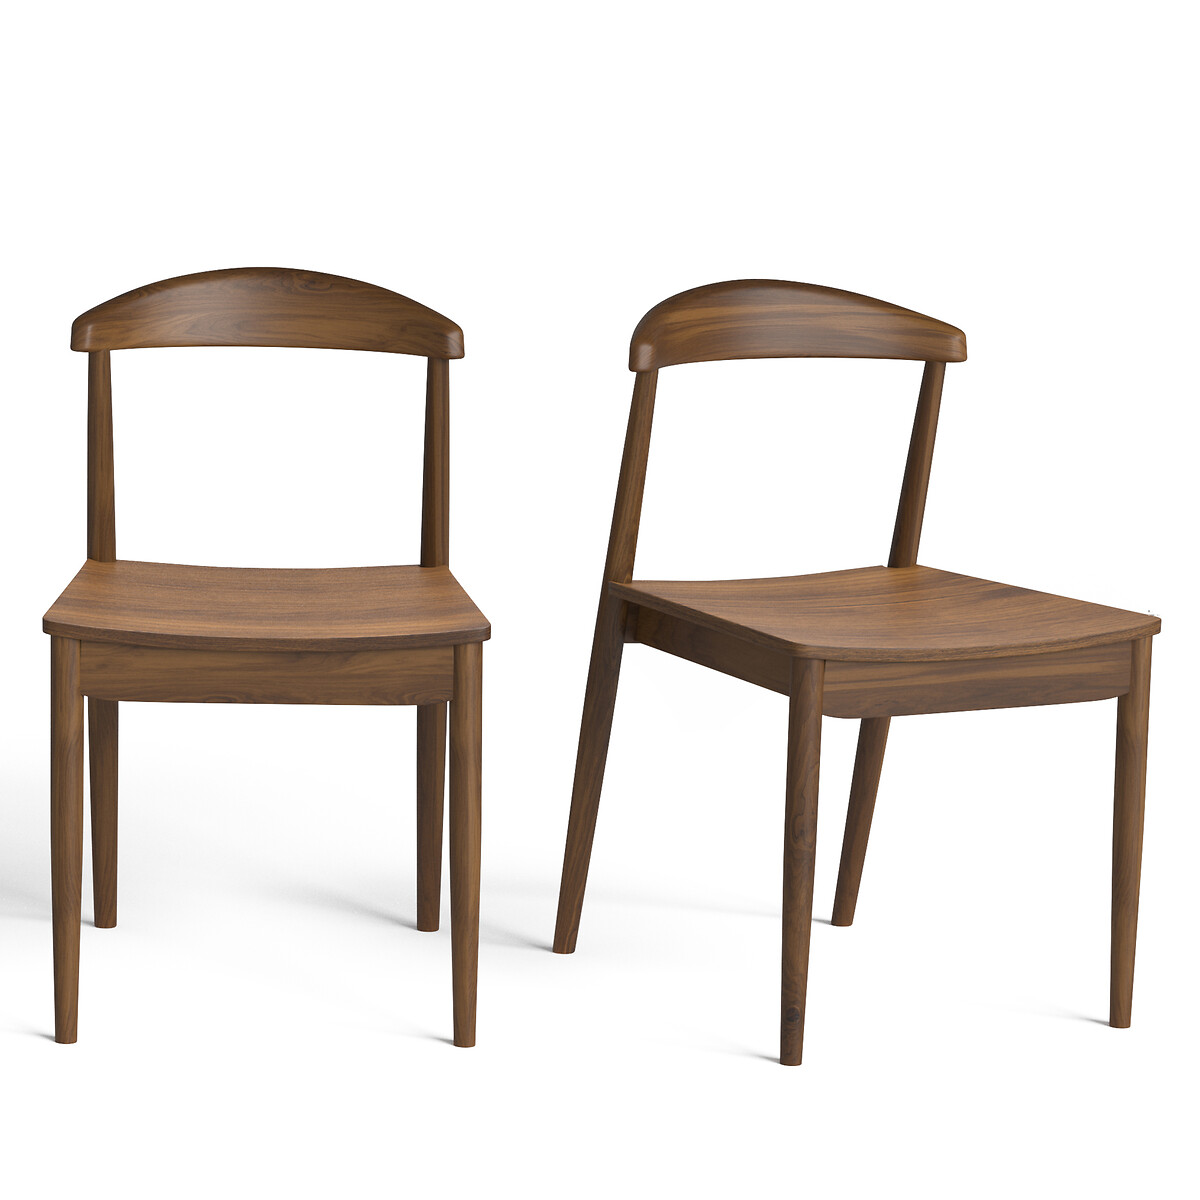 Комплект из 2 стульев, Galb La Redoute комплект из 2 каштановый комплект из 2 стульев jimi la redoute единый размер зеленый